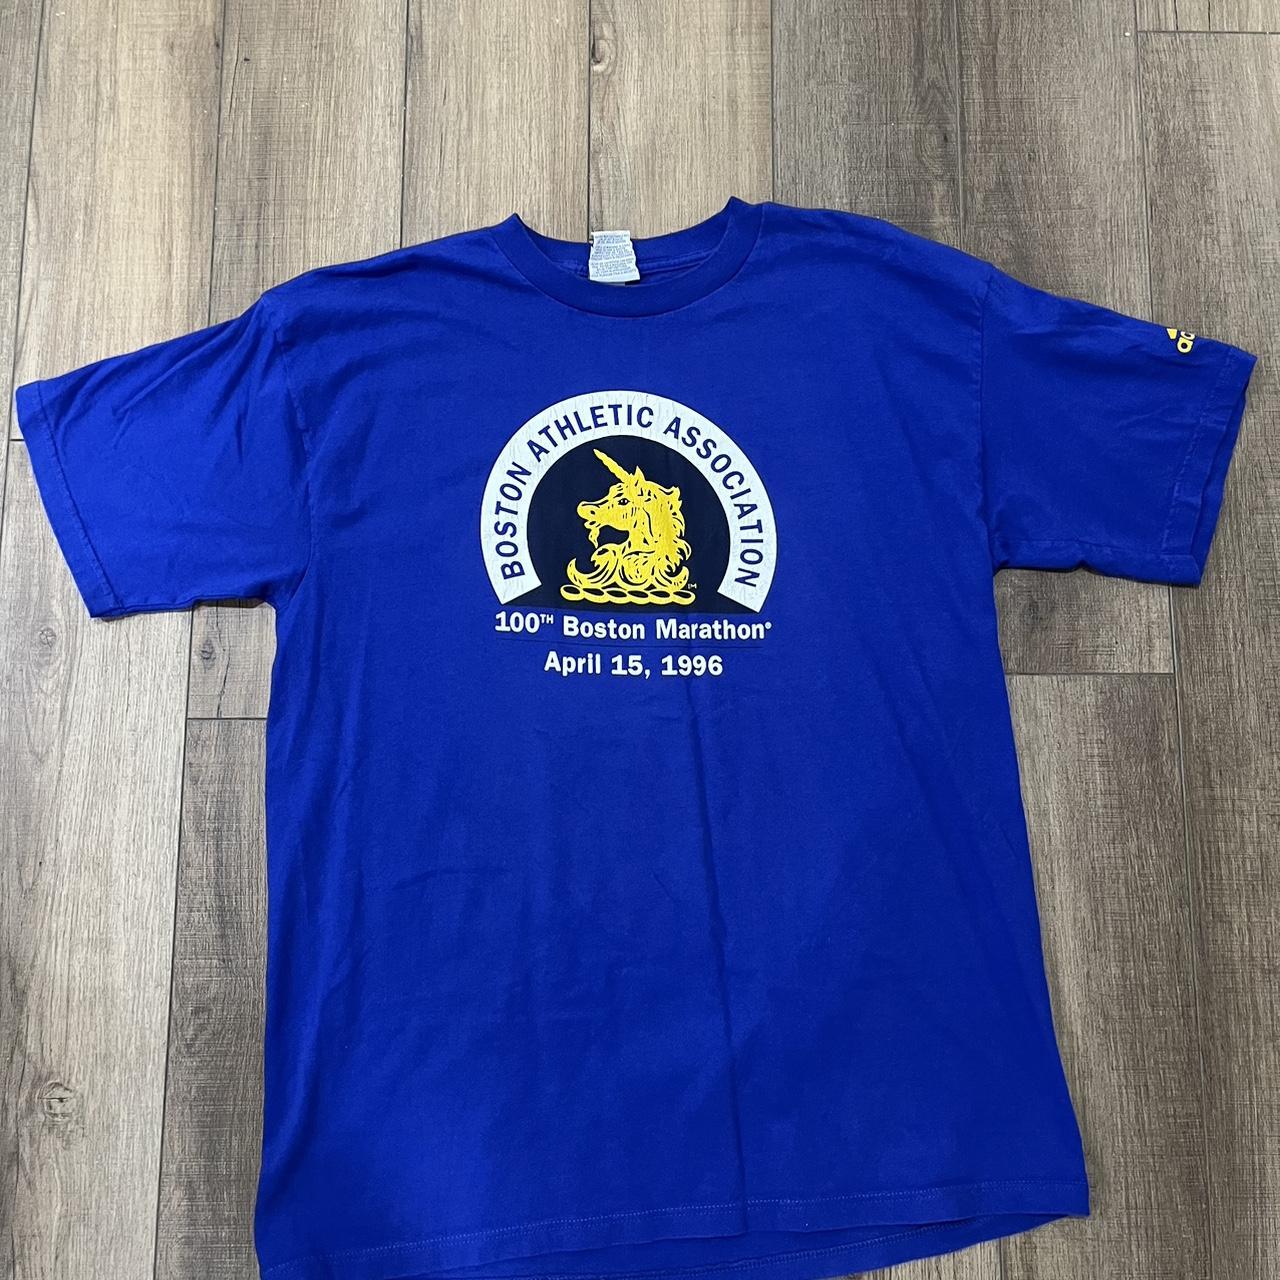 Boston strong blue yellow T-Shirt | Zazzle